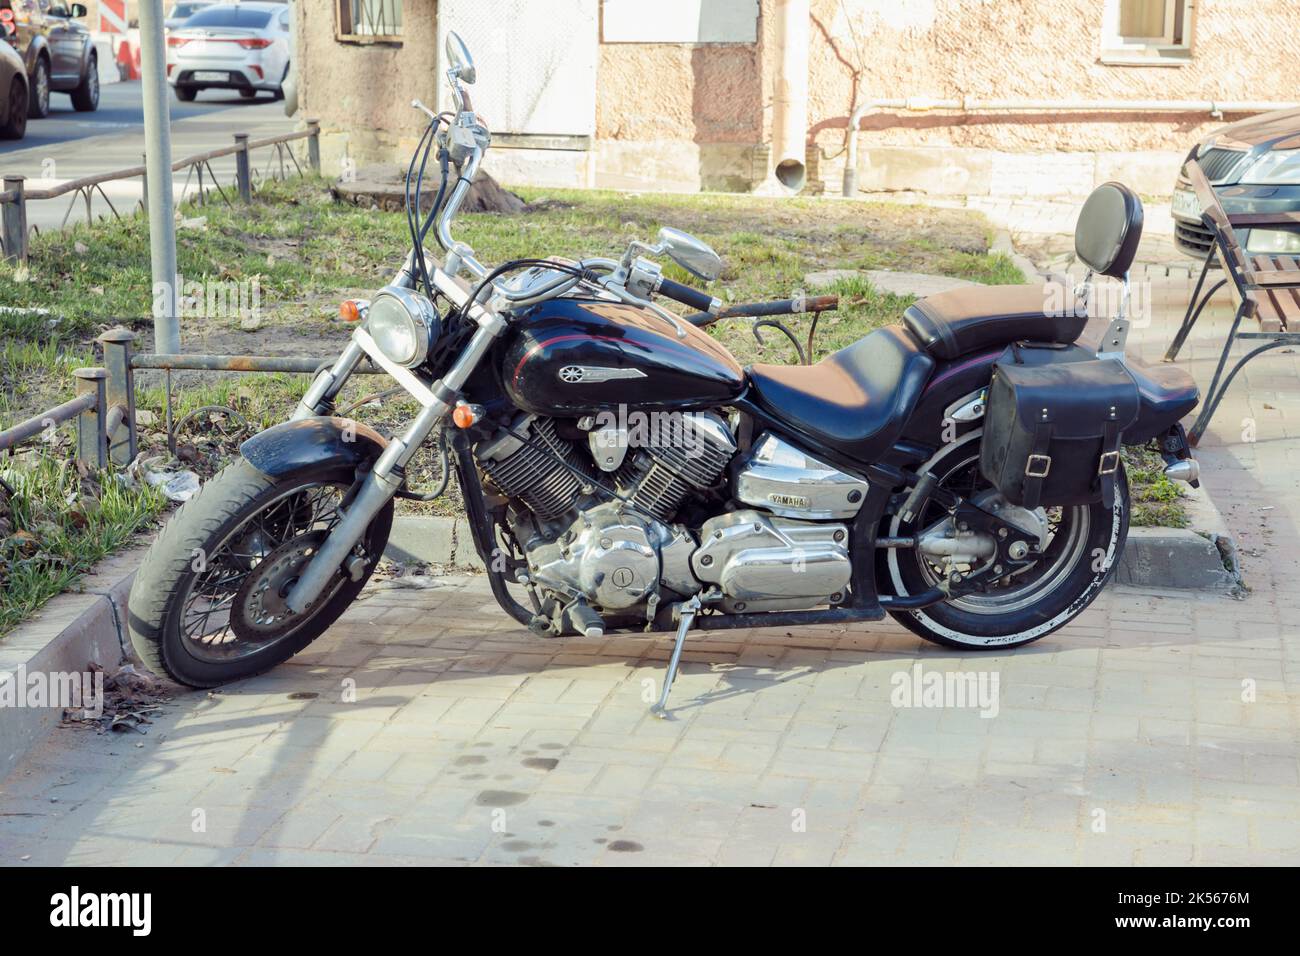 Saint-Pétersbourg, Russie - 04.01.2022: yamaha Drag star moto dans la cour. Vue de face Banque D'Images